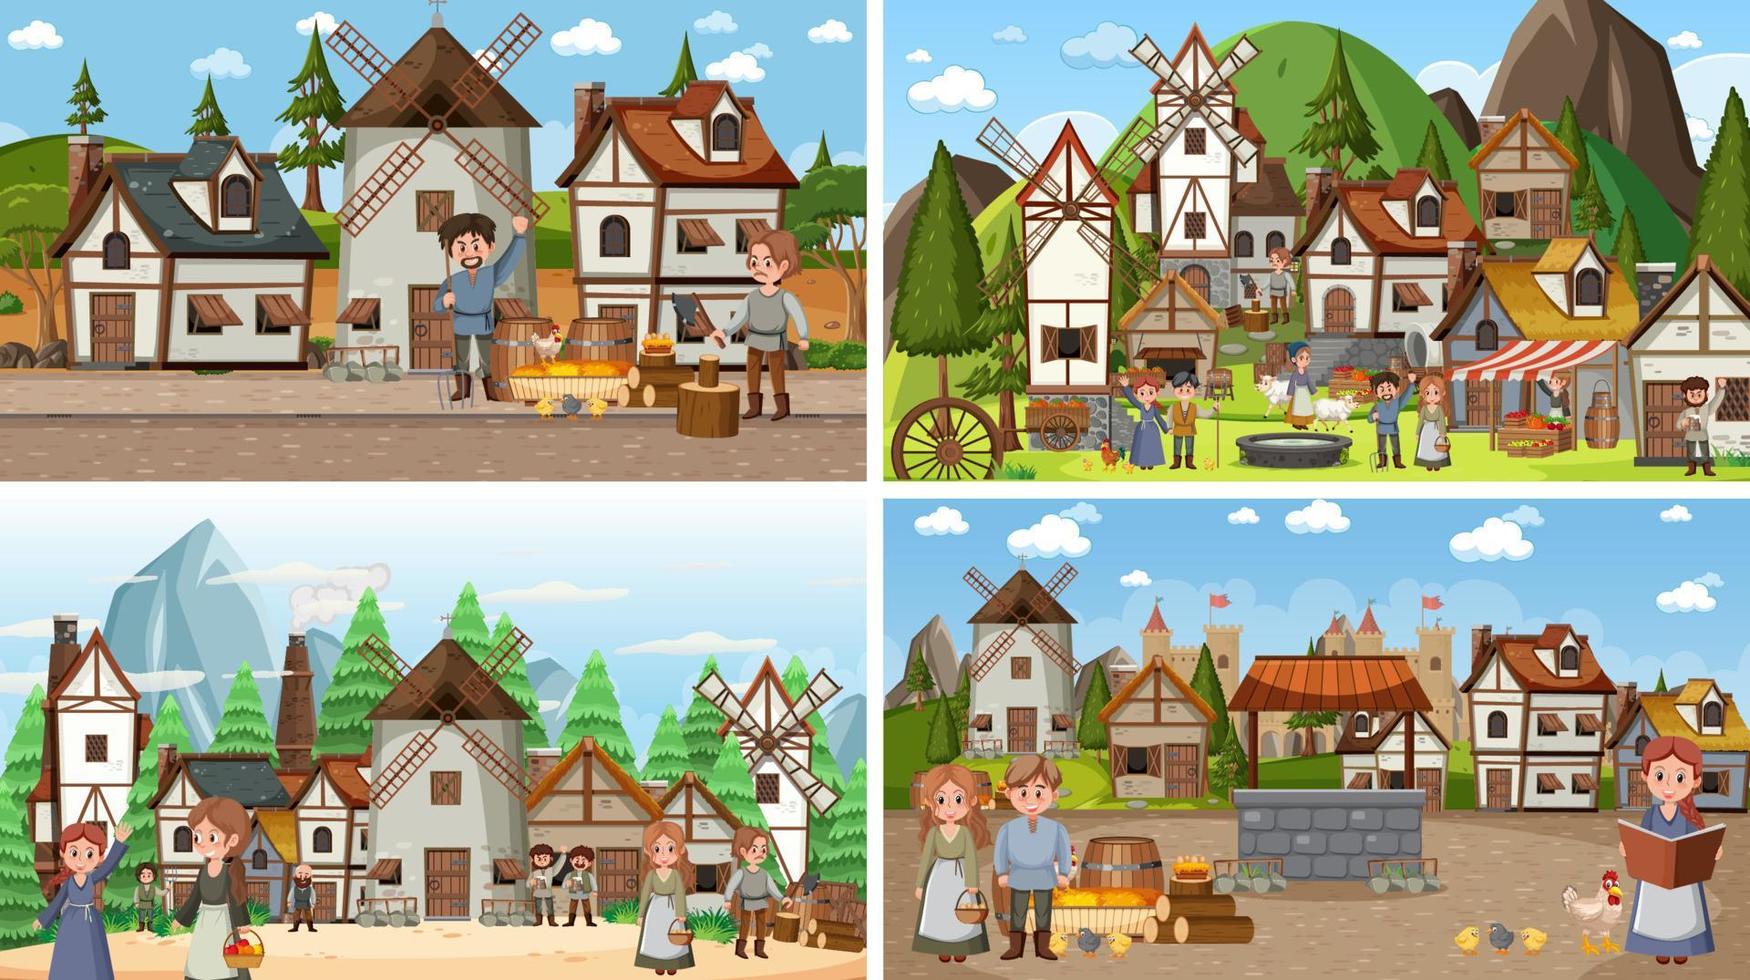 conjunto de diferentes escenas medievales vector